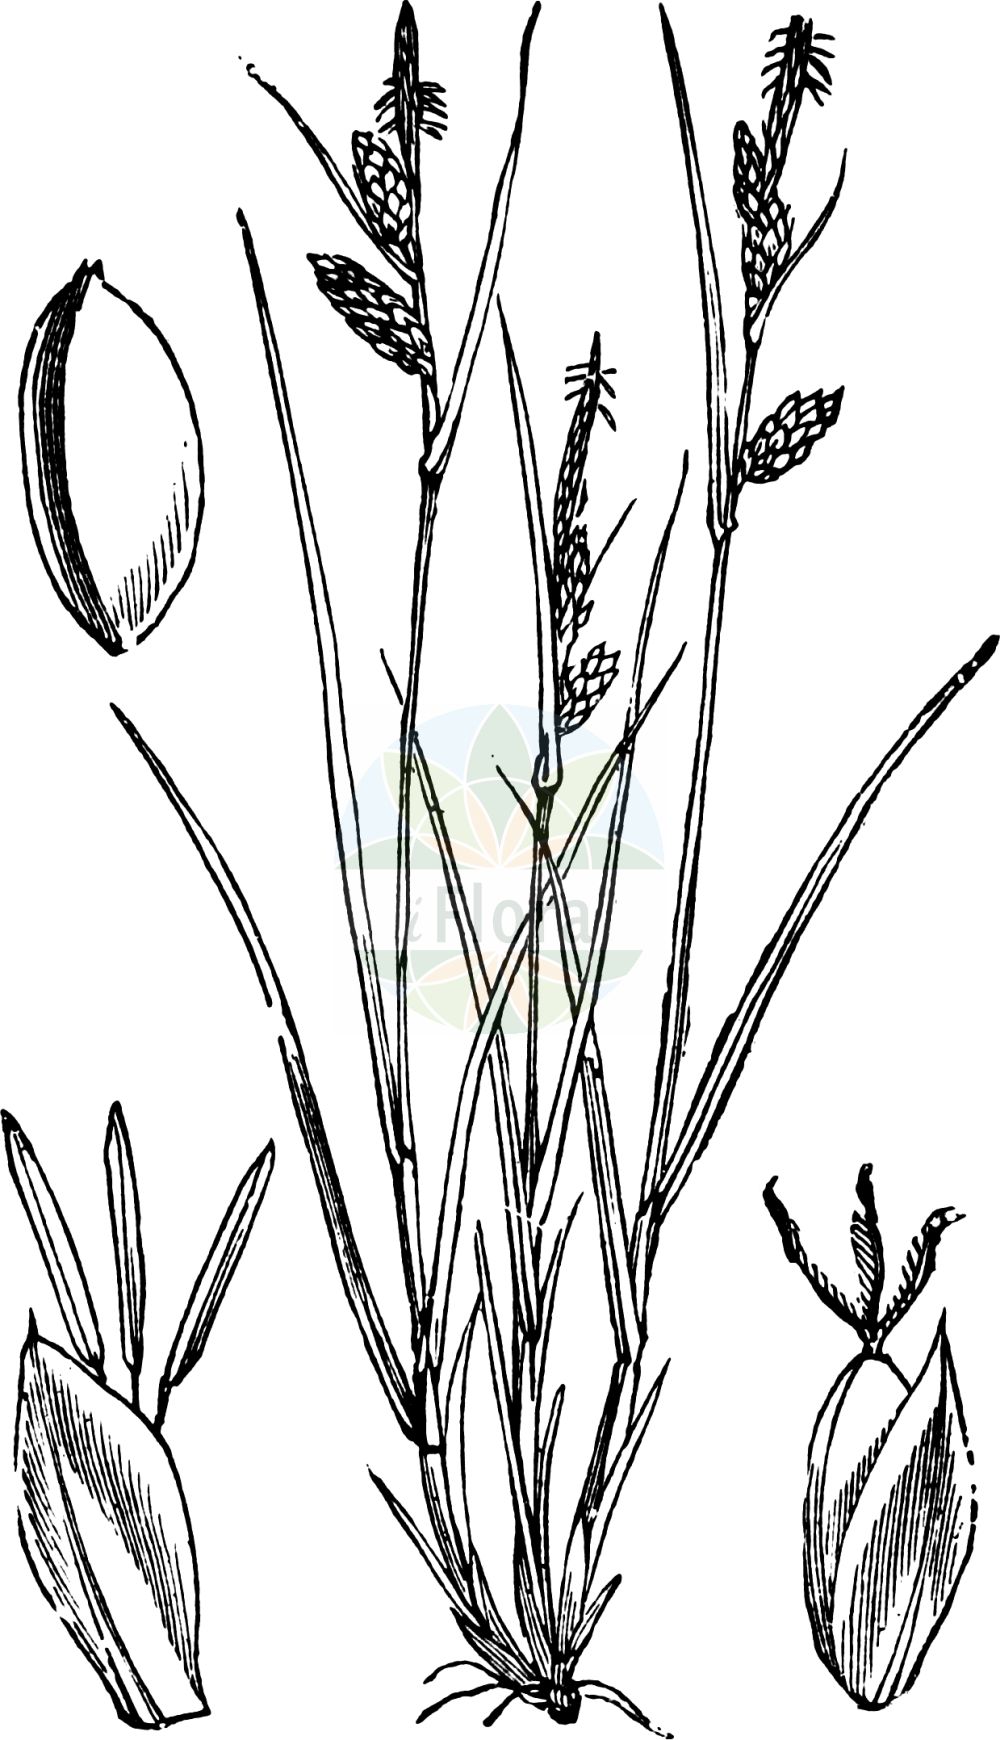 Historische Abbildung von Carex pallescens (Bleiche Segge - Pale Sedge). Das Bild zeigt Blatt, Bluete, Frucht und Same. ---- Historical Drawing of Carex pallescens (Bleiche Segge - Pale Sedge). The image is showing leaf, flower, fruit and seed.(Carex pallescens,Bleiche Segge,Pale Sedge,Carex chalcodeta,Carex pallescens,Carex pallescens var. chalcoleta,Bleiche Segge,Pale Sedge,Carex,Segge,Sedge,Cyperaceae,Sauergräser,Sedge family,Blatt,Bluete,Frucht,Same,leaf,flower,fruit,seed,Fitch et al. (1880))